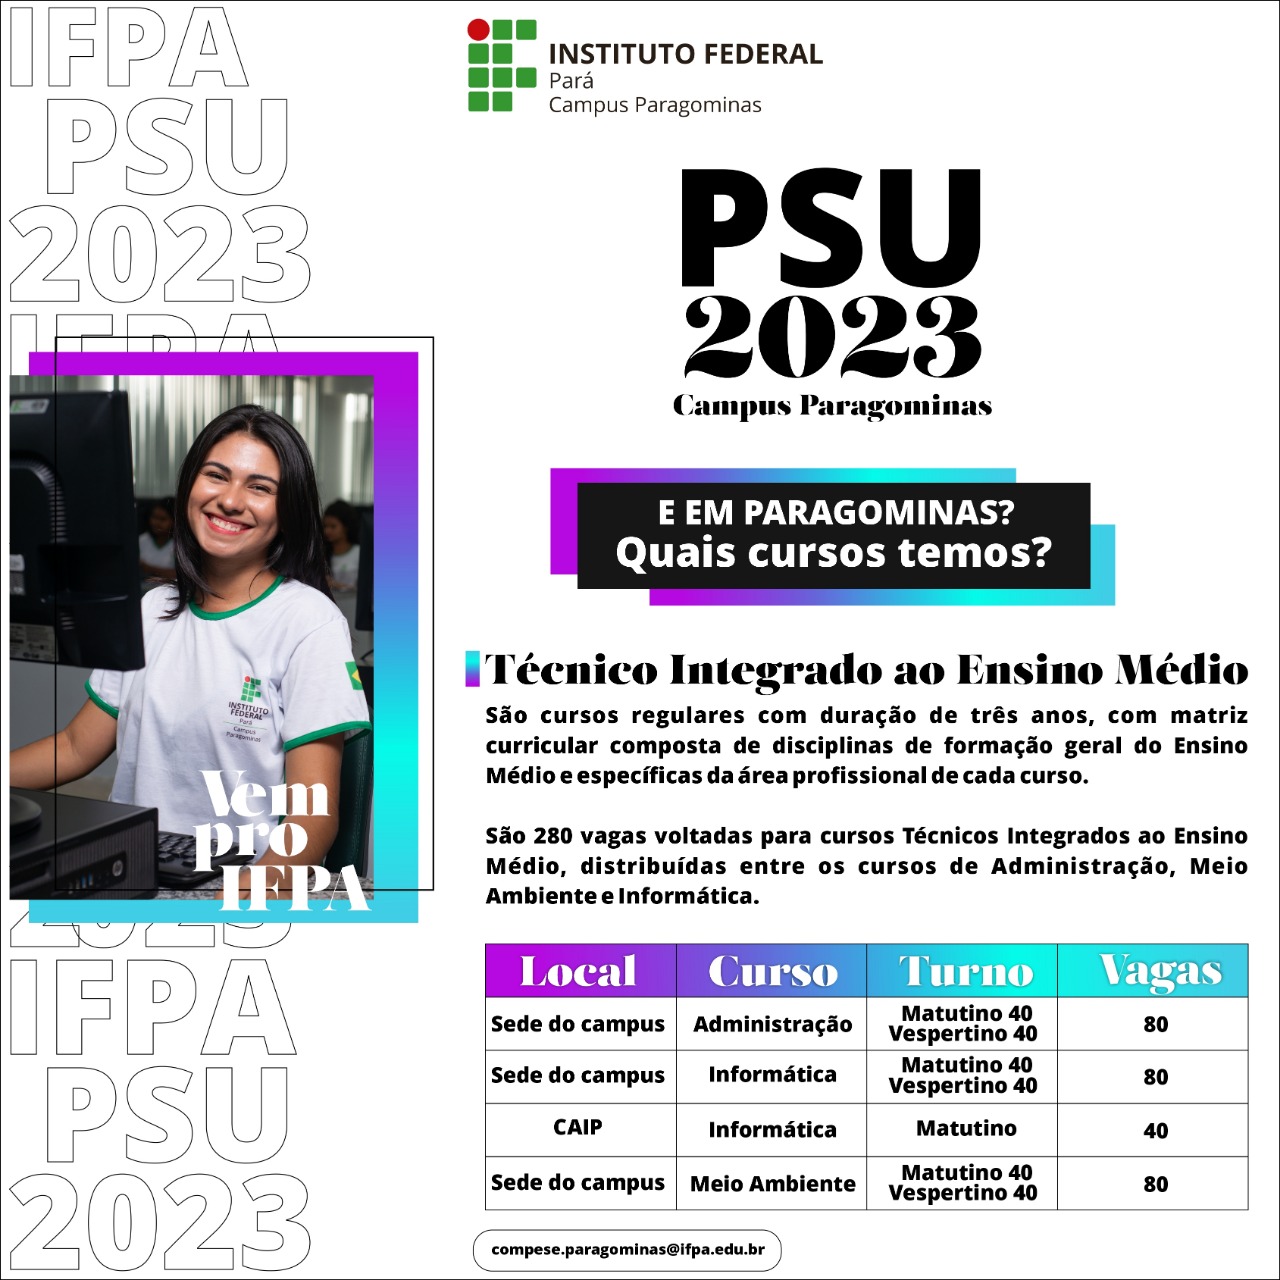 PSU/2023 - Cursos Técnicos Integrados ao Ens. Médio